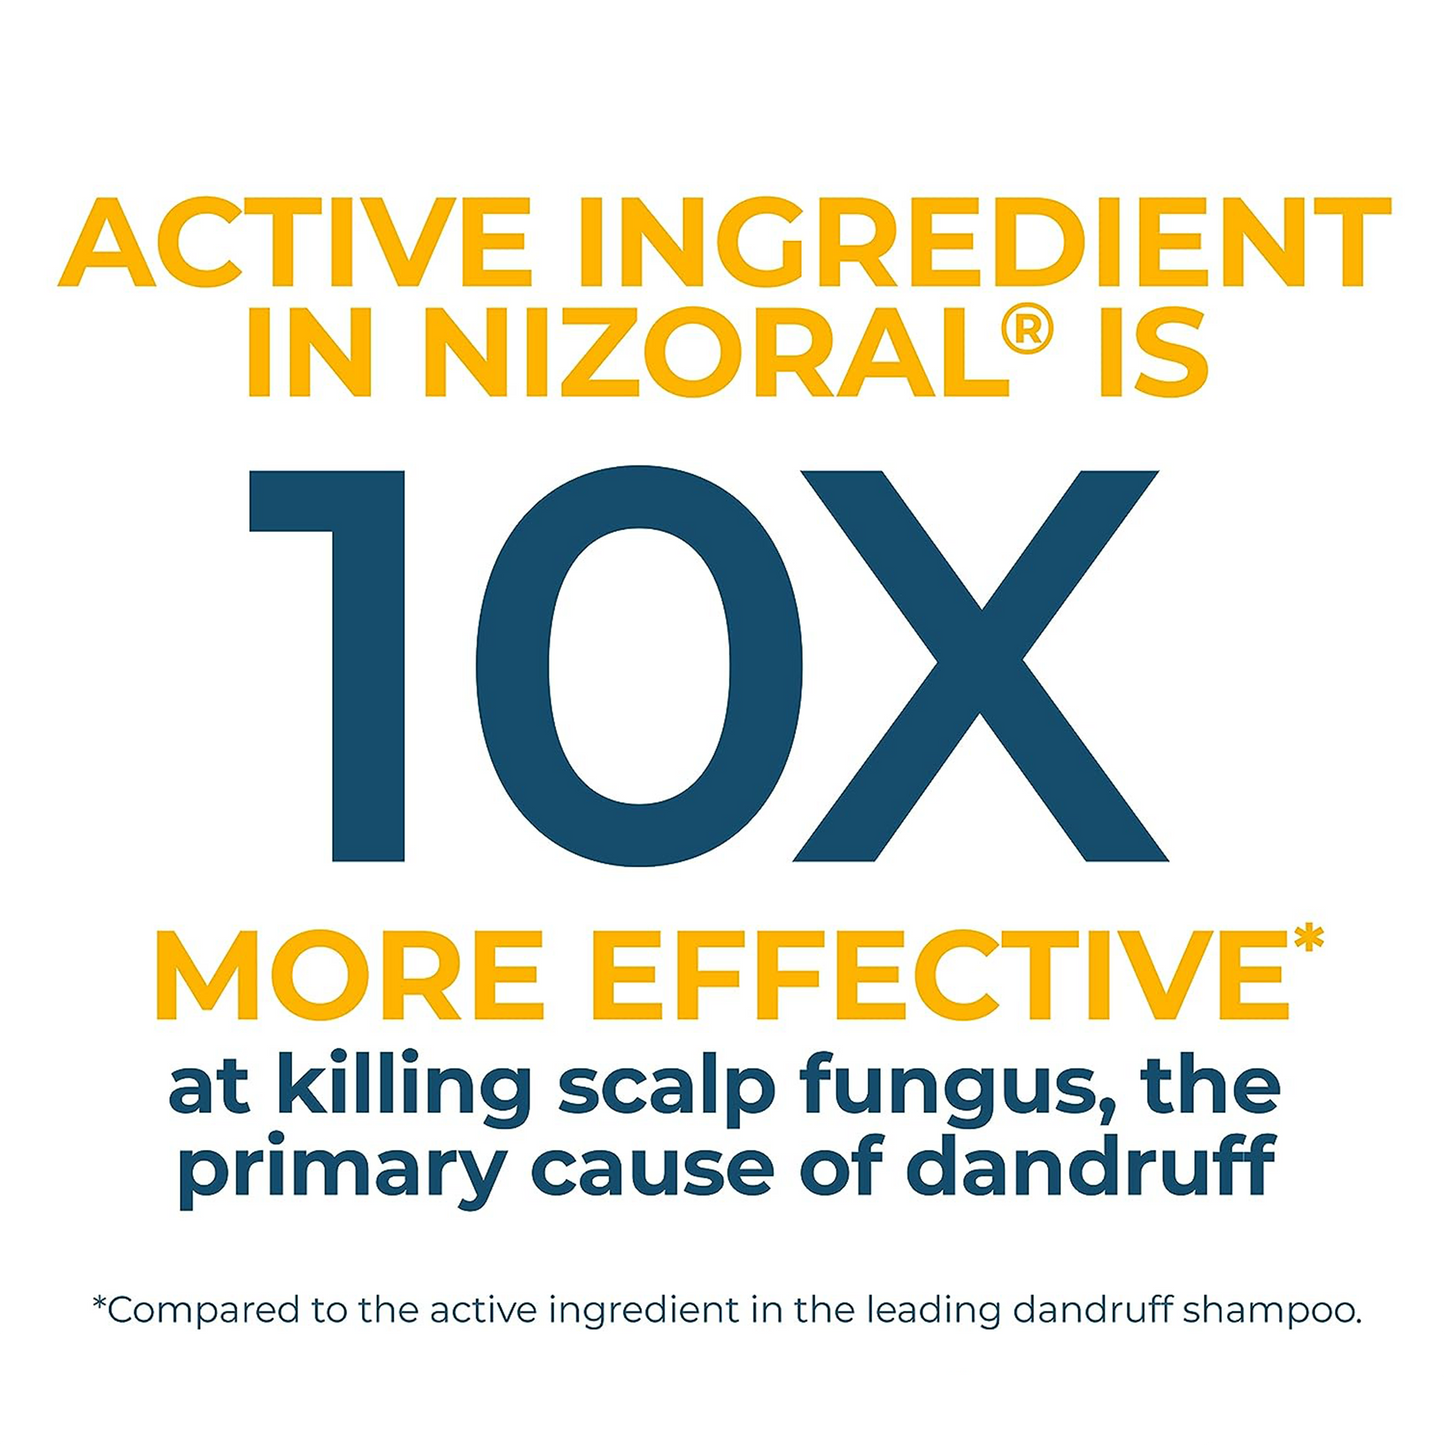 Nizoral ®️ Anti-Dandruff Ketoconazole 1% Anti-Dandruff Shampoo XL • Anti-Dandruff Shampoo Against Flaking, Scaling, Itching & Irritation • 1x400ml